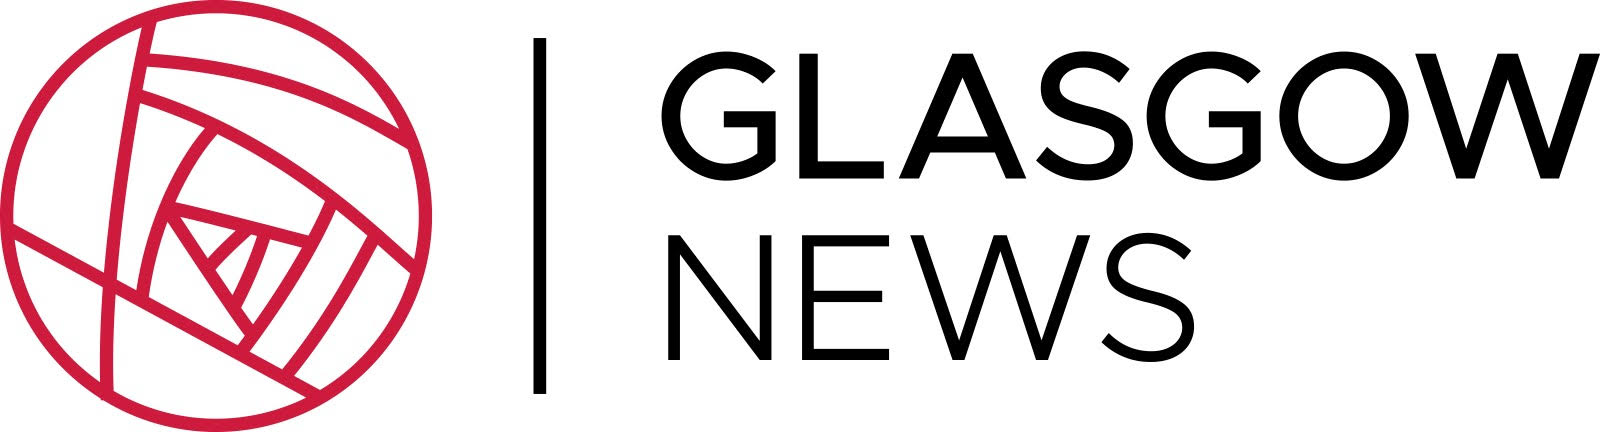 Glasgow News